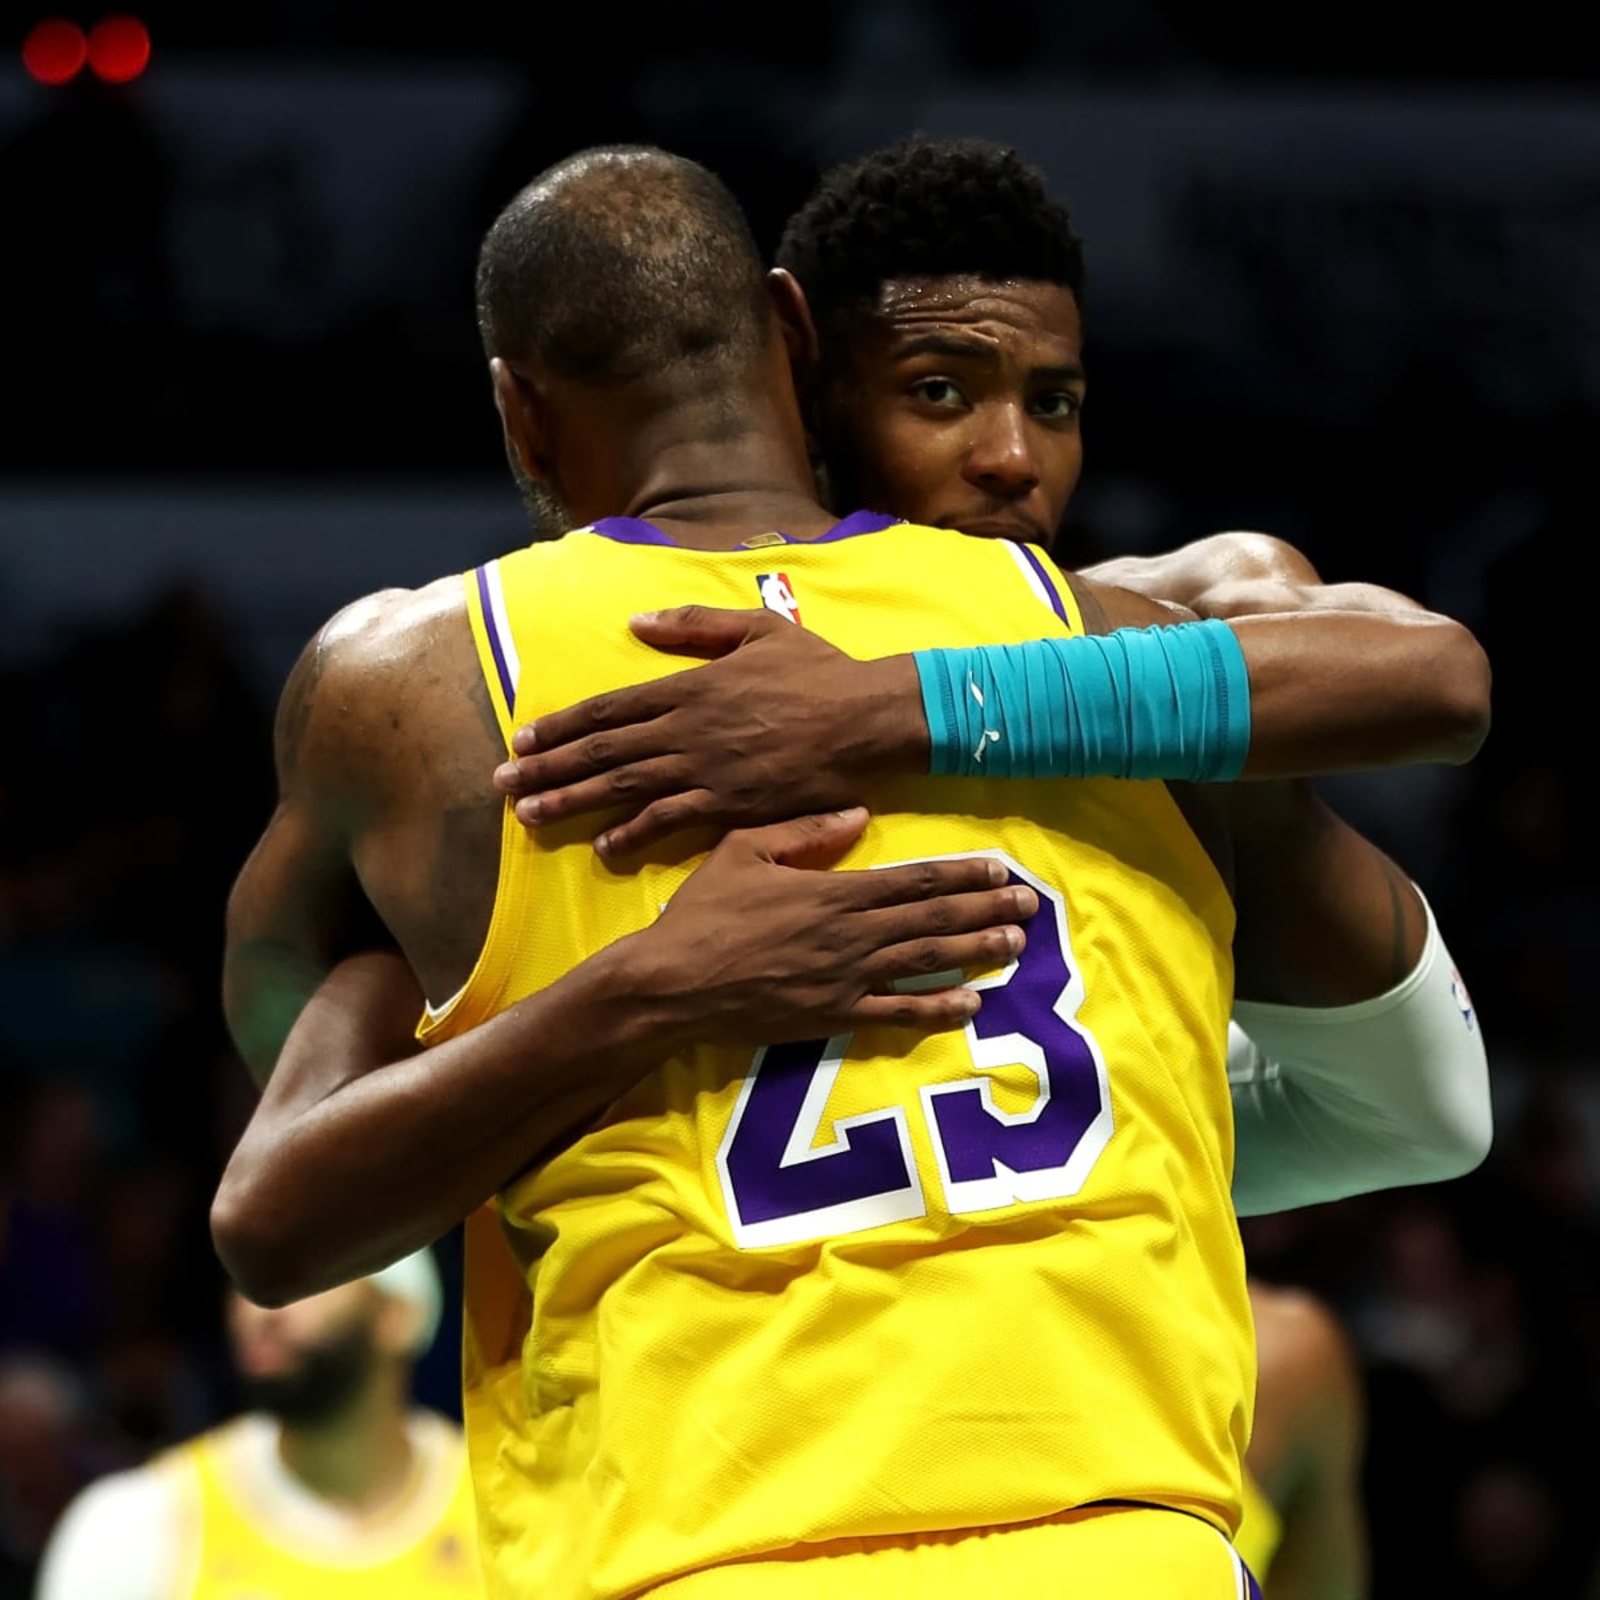 Lakers' LeBron James Praises Hornets' Brandon Miller: 'I Love What